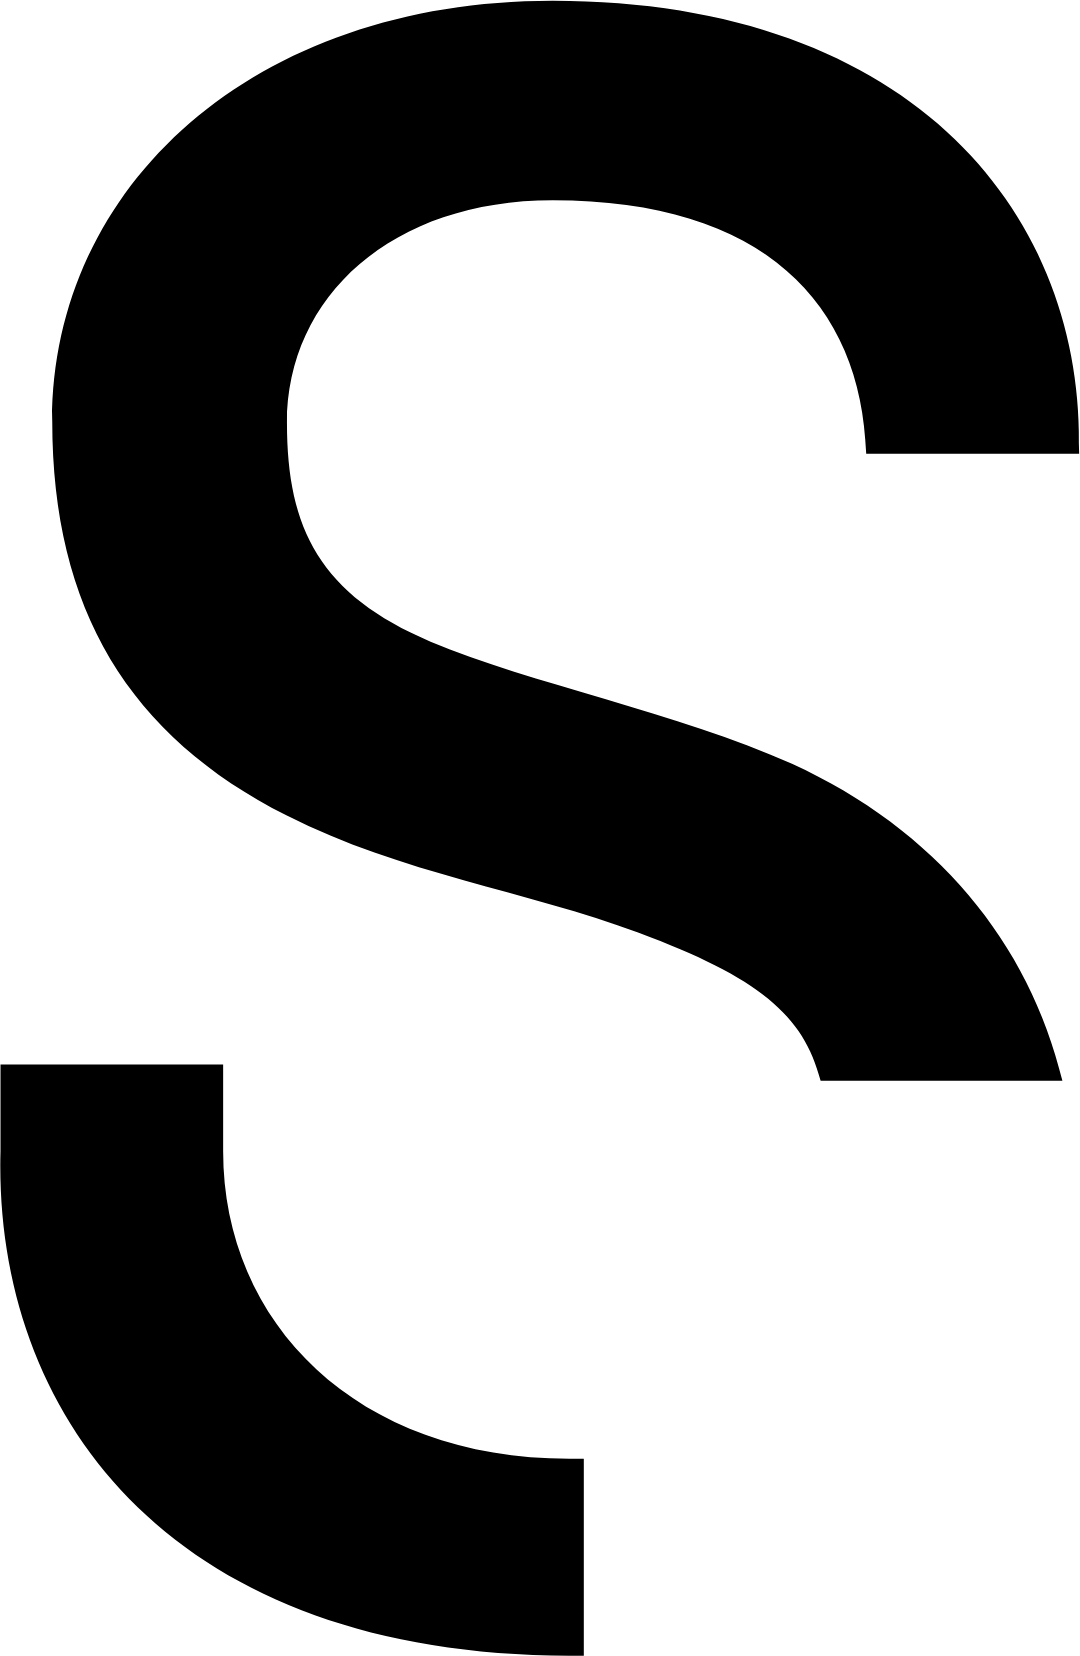 Sartorius logo (PNG transparent)